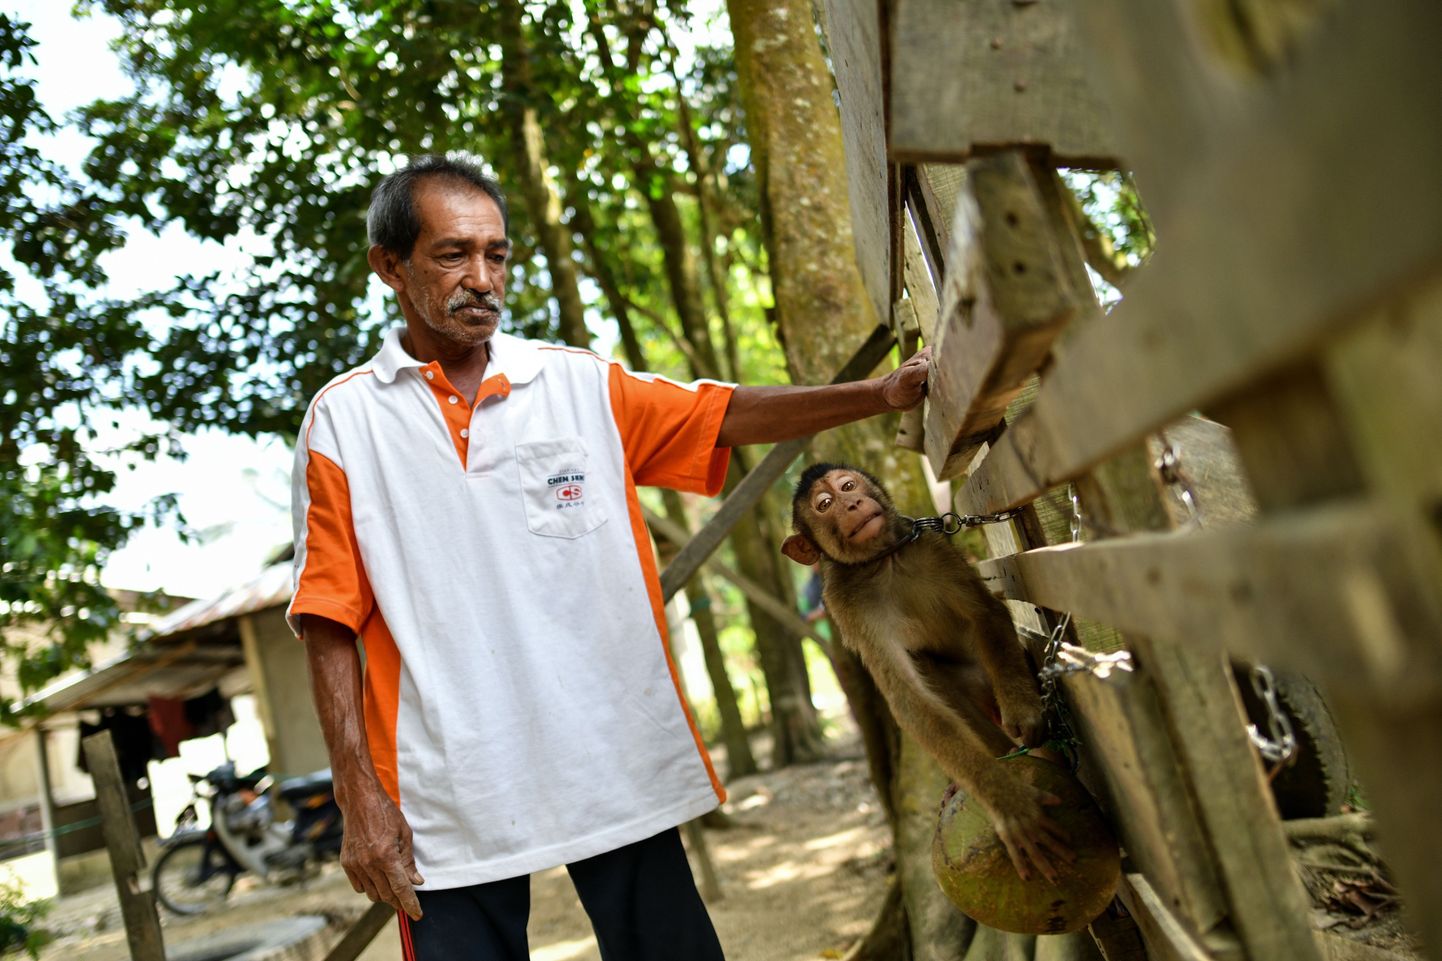 Malaisia ahvikoolitaja Wan Ibrahim Wan Mat koos ühega oma hoolealustest. Oma makaake saadavad tema juurde kookospähklikoristamist õppima inimeses üle kogu riigi.